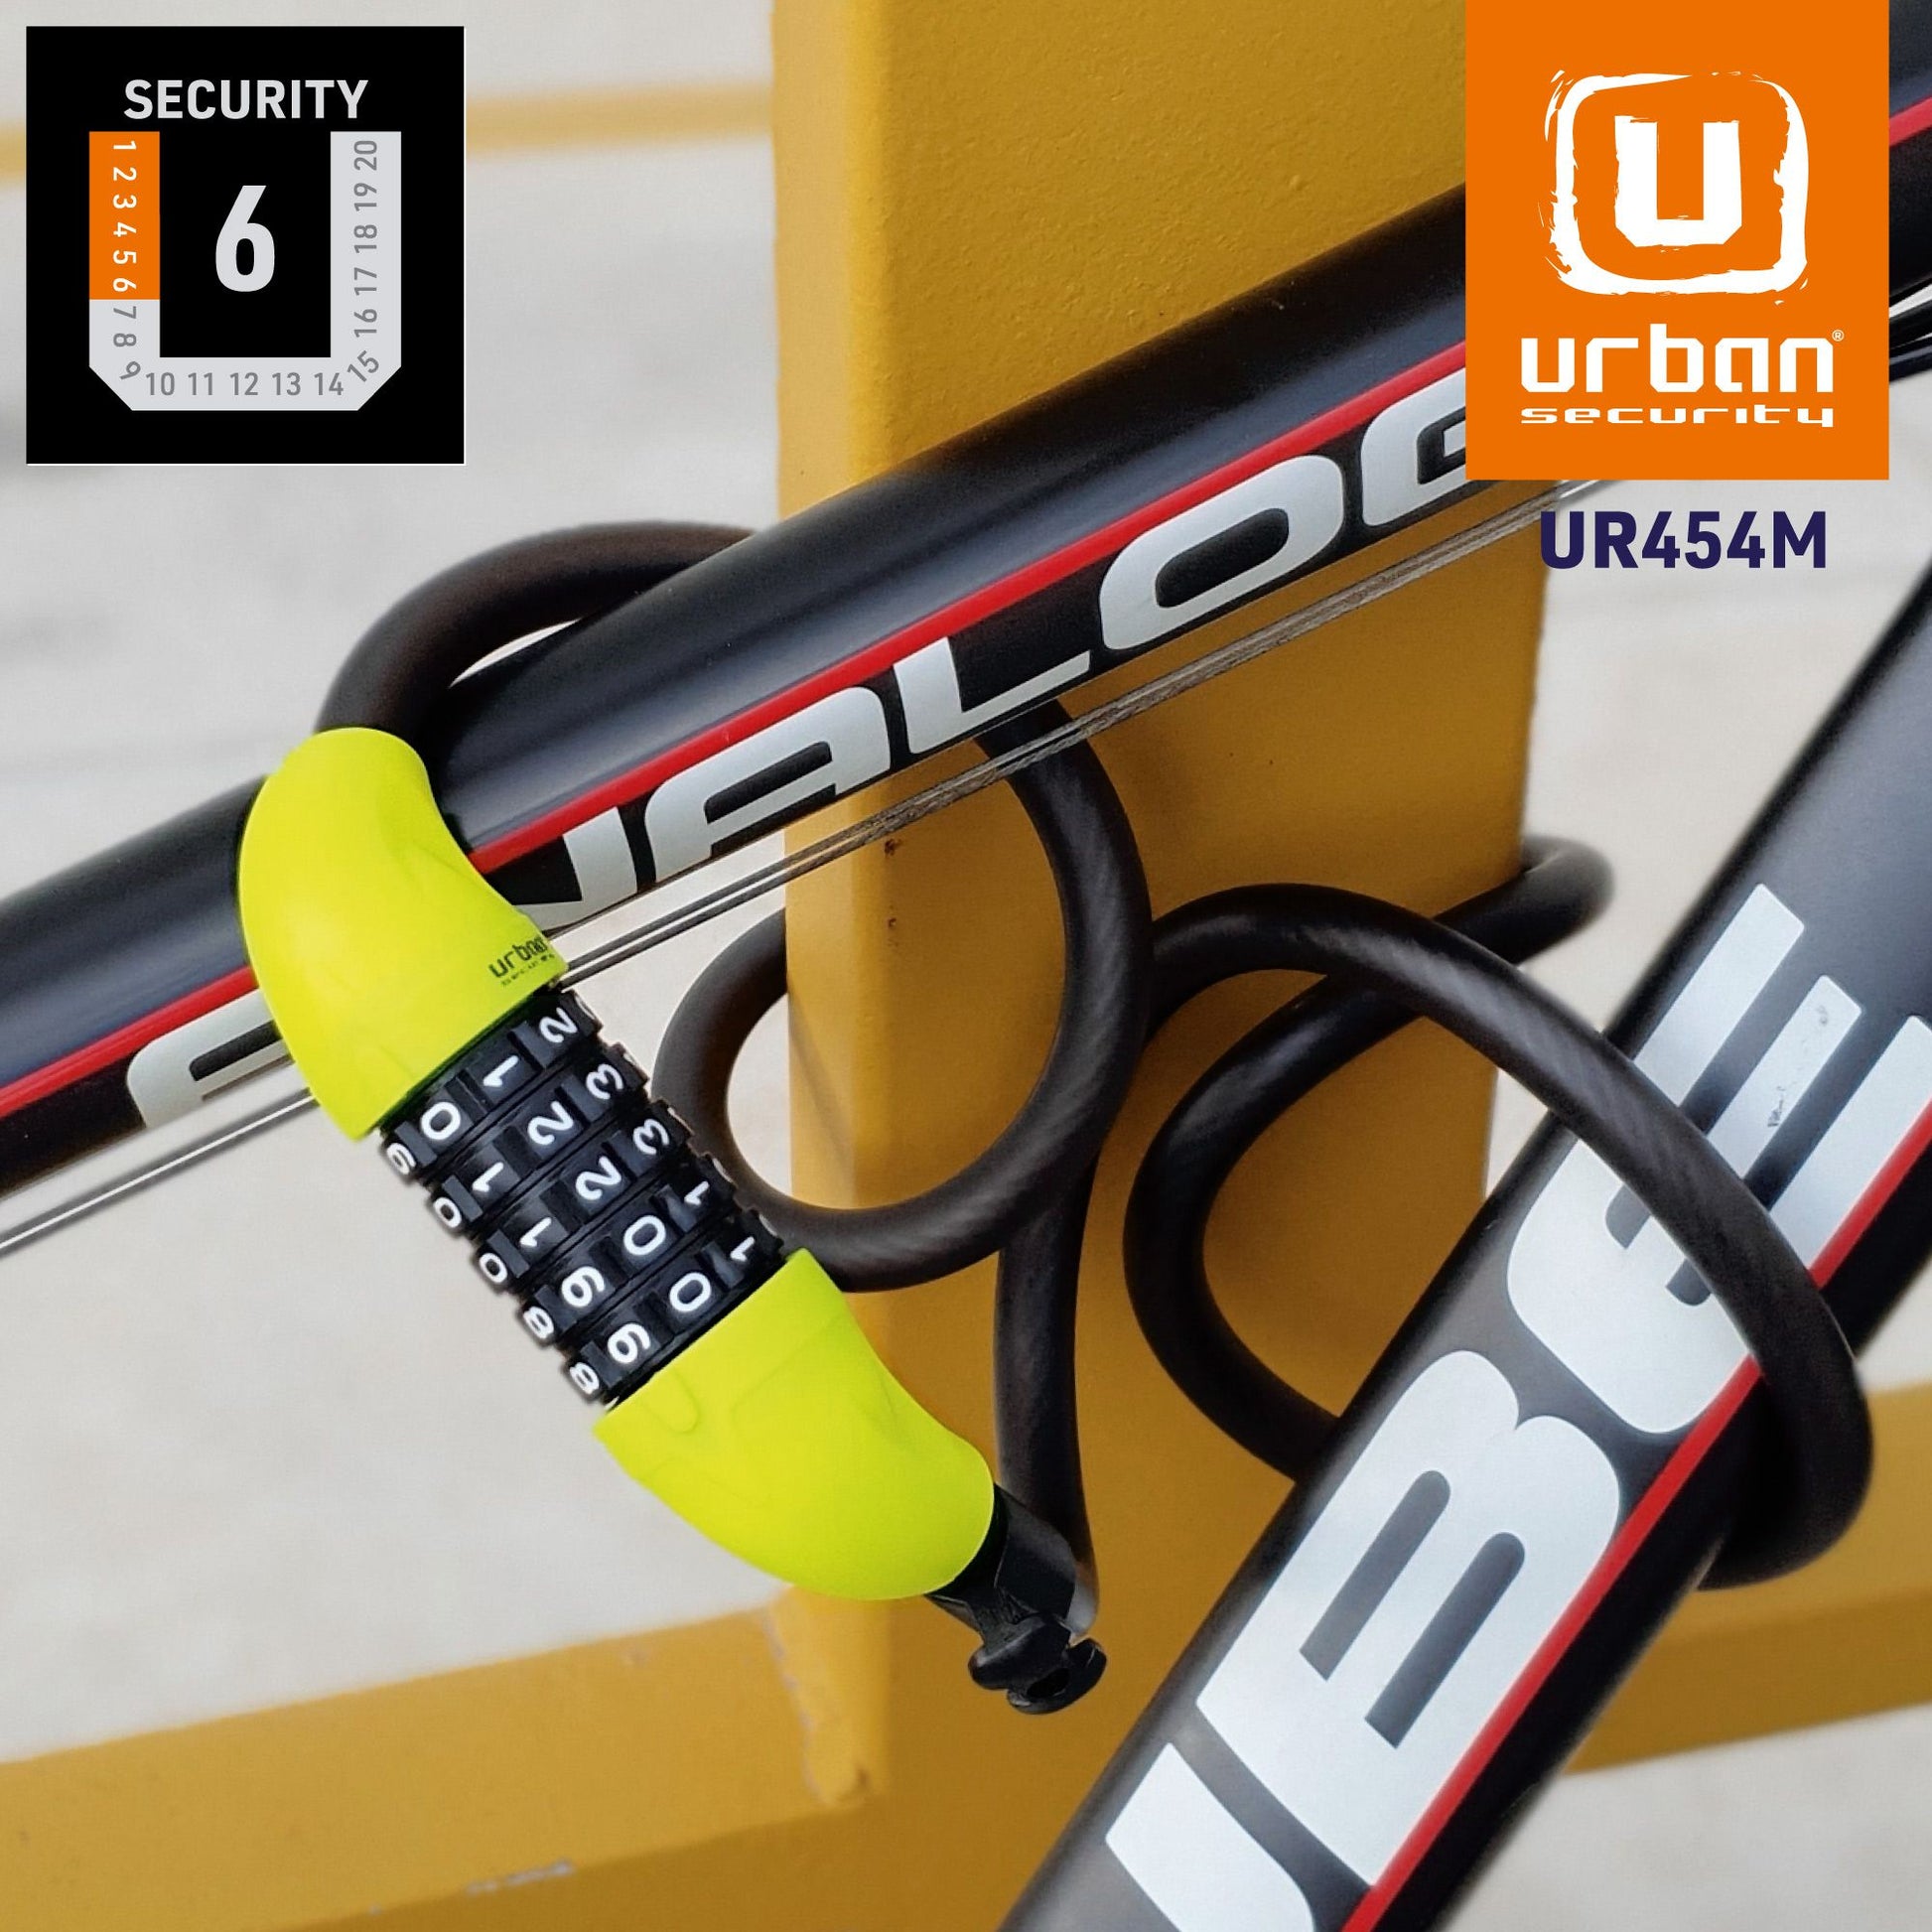 Antirrobo Moto Cable Urban UR454L - URA Moto